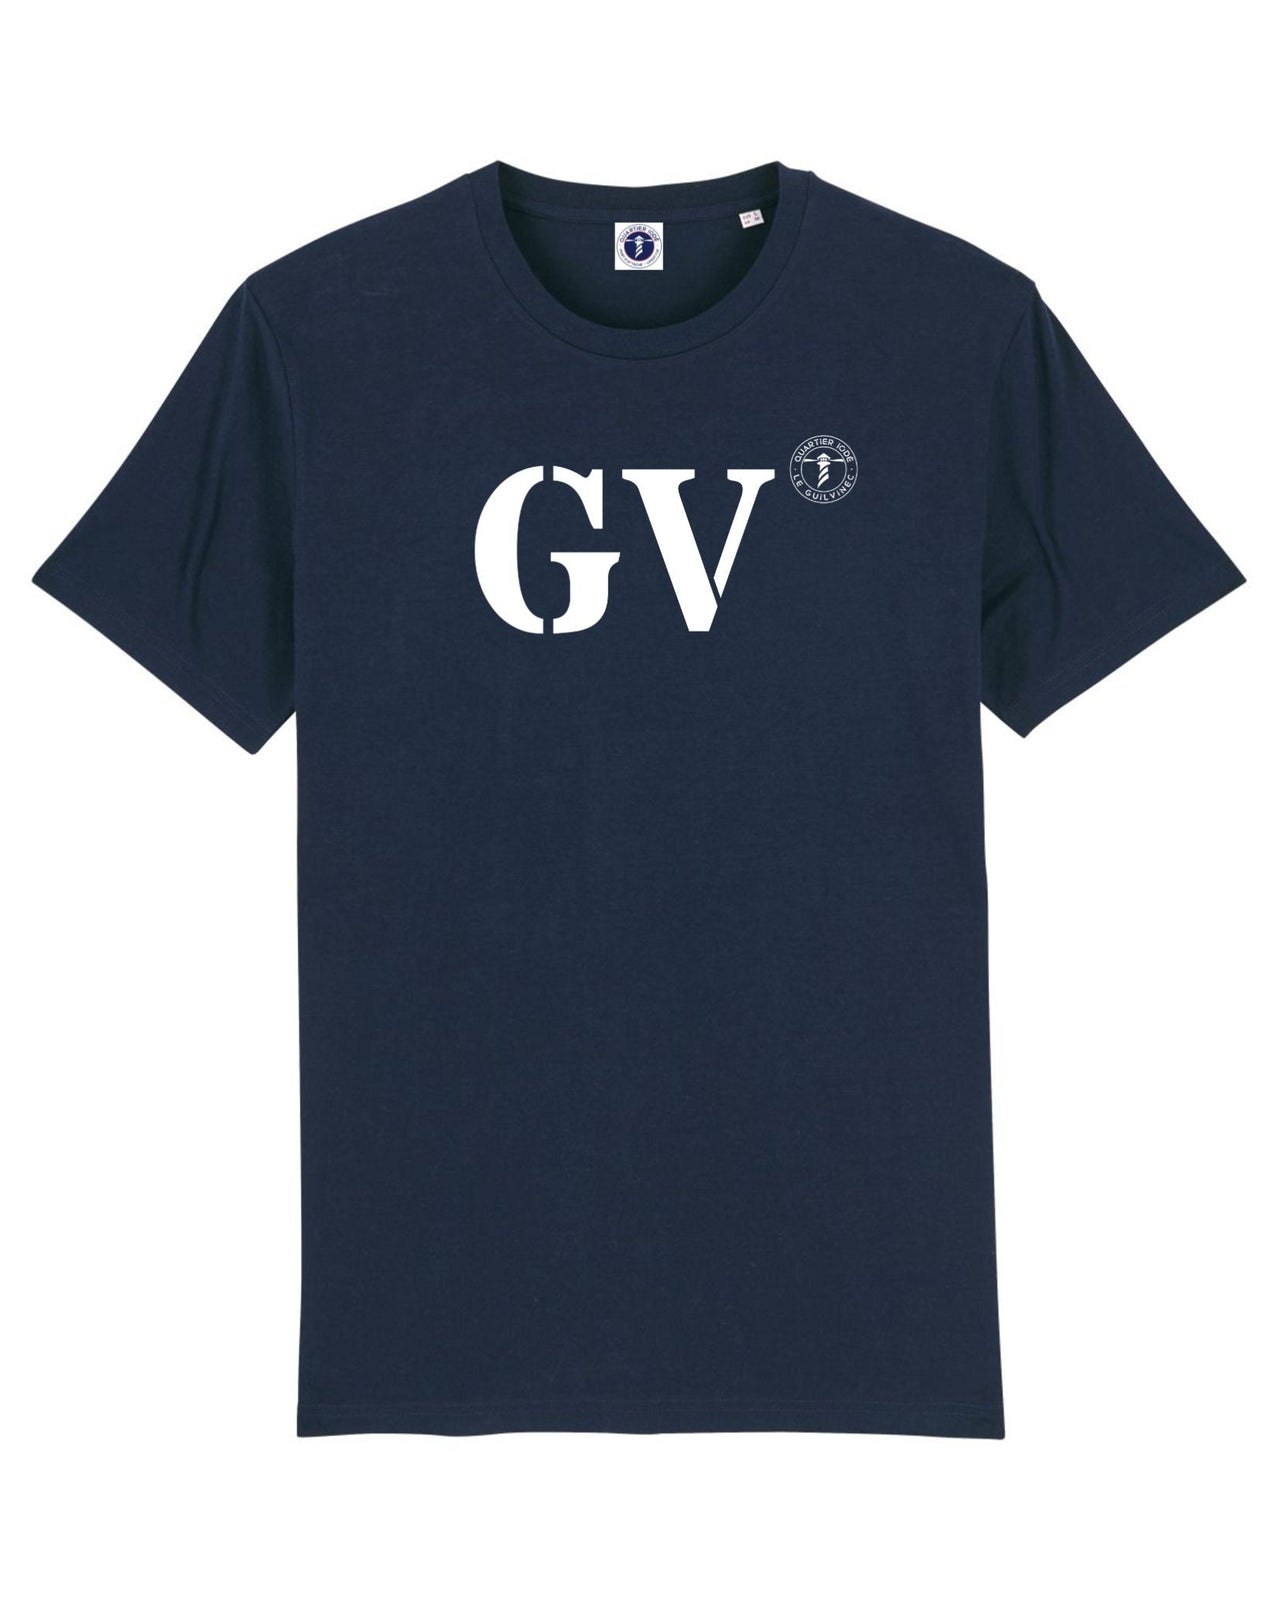 Le Guilvinec avec ses initiales GV sur le Tshirt de Quartier Iodé ! enfin un vêtement pour porter fièrement votre port préféré. 